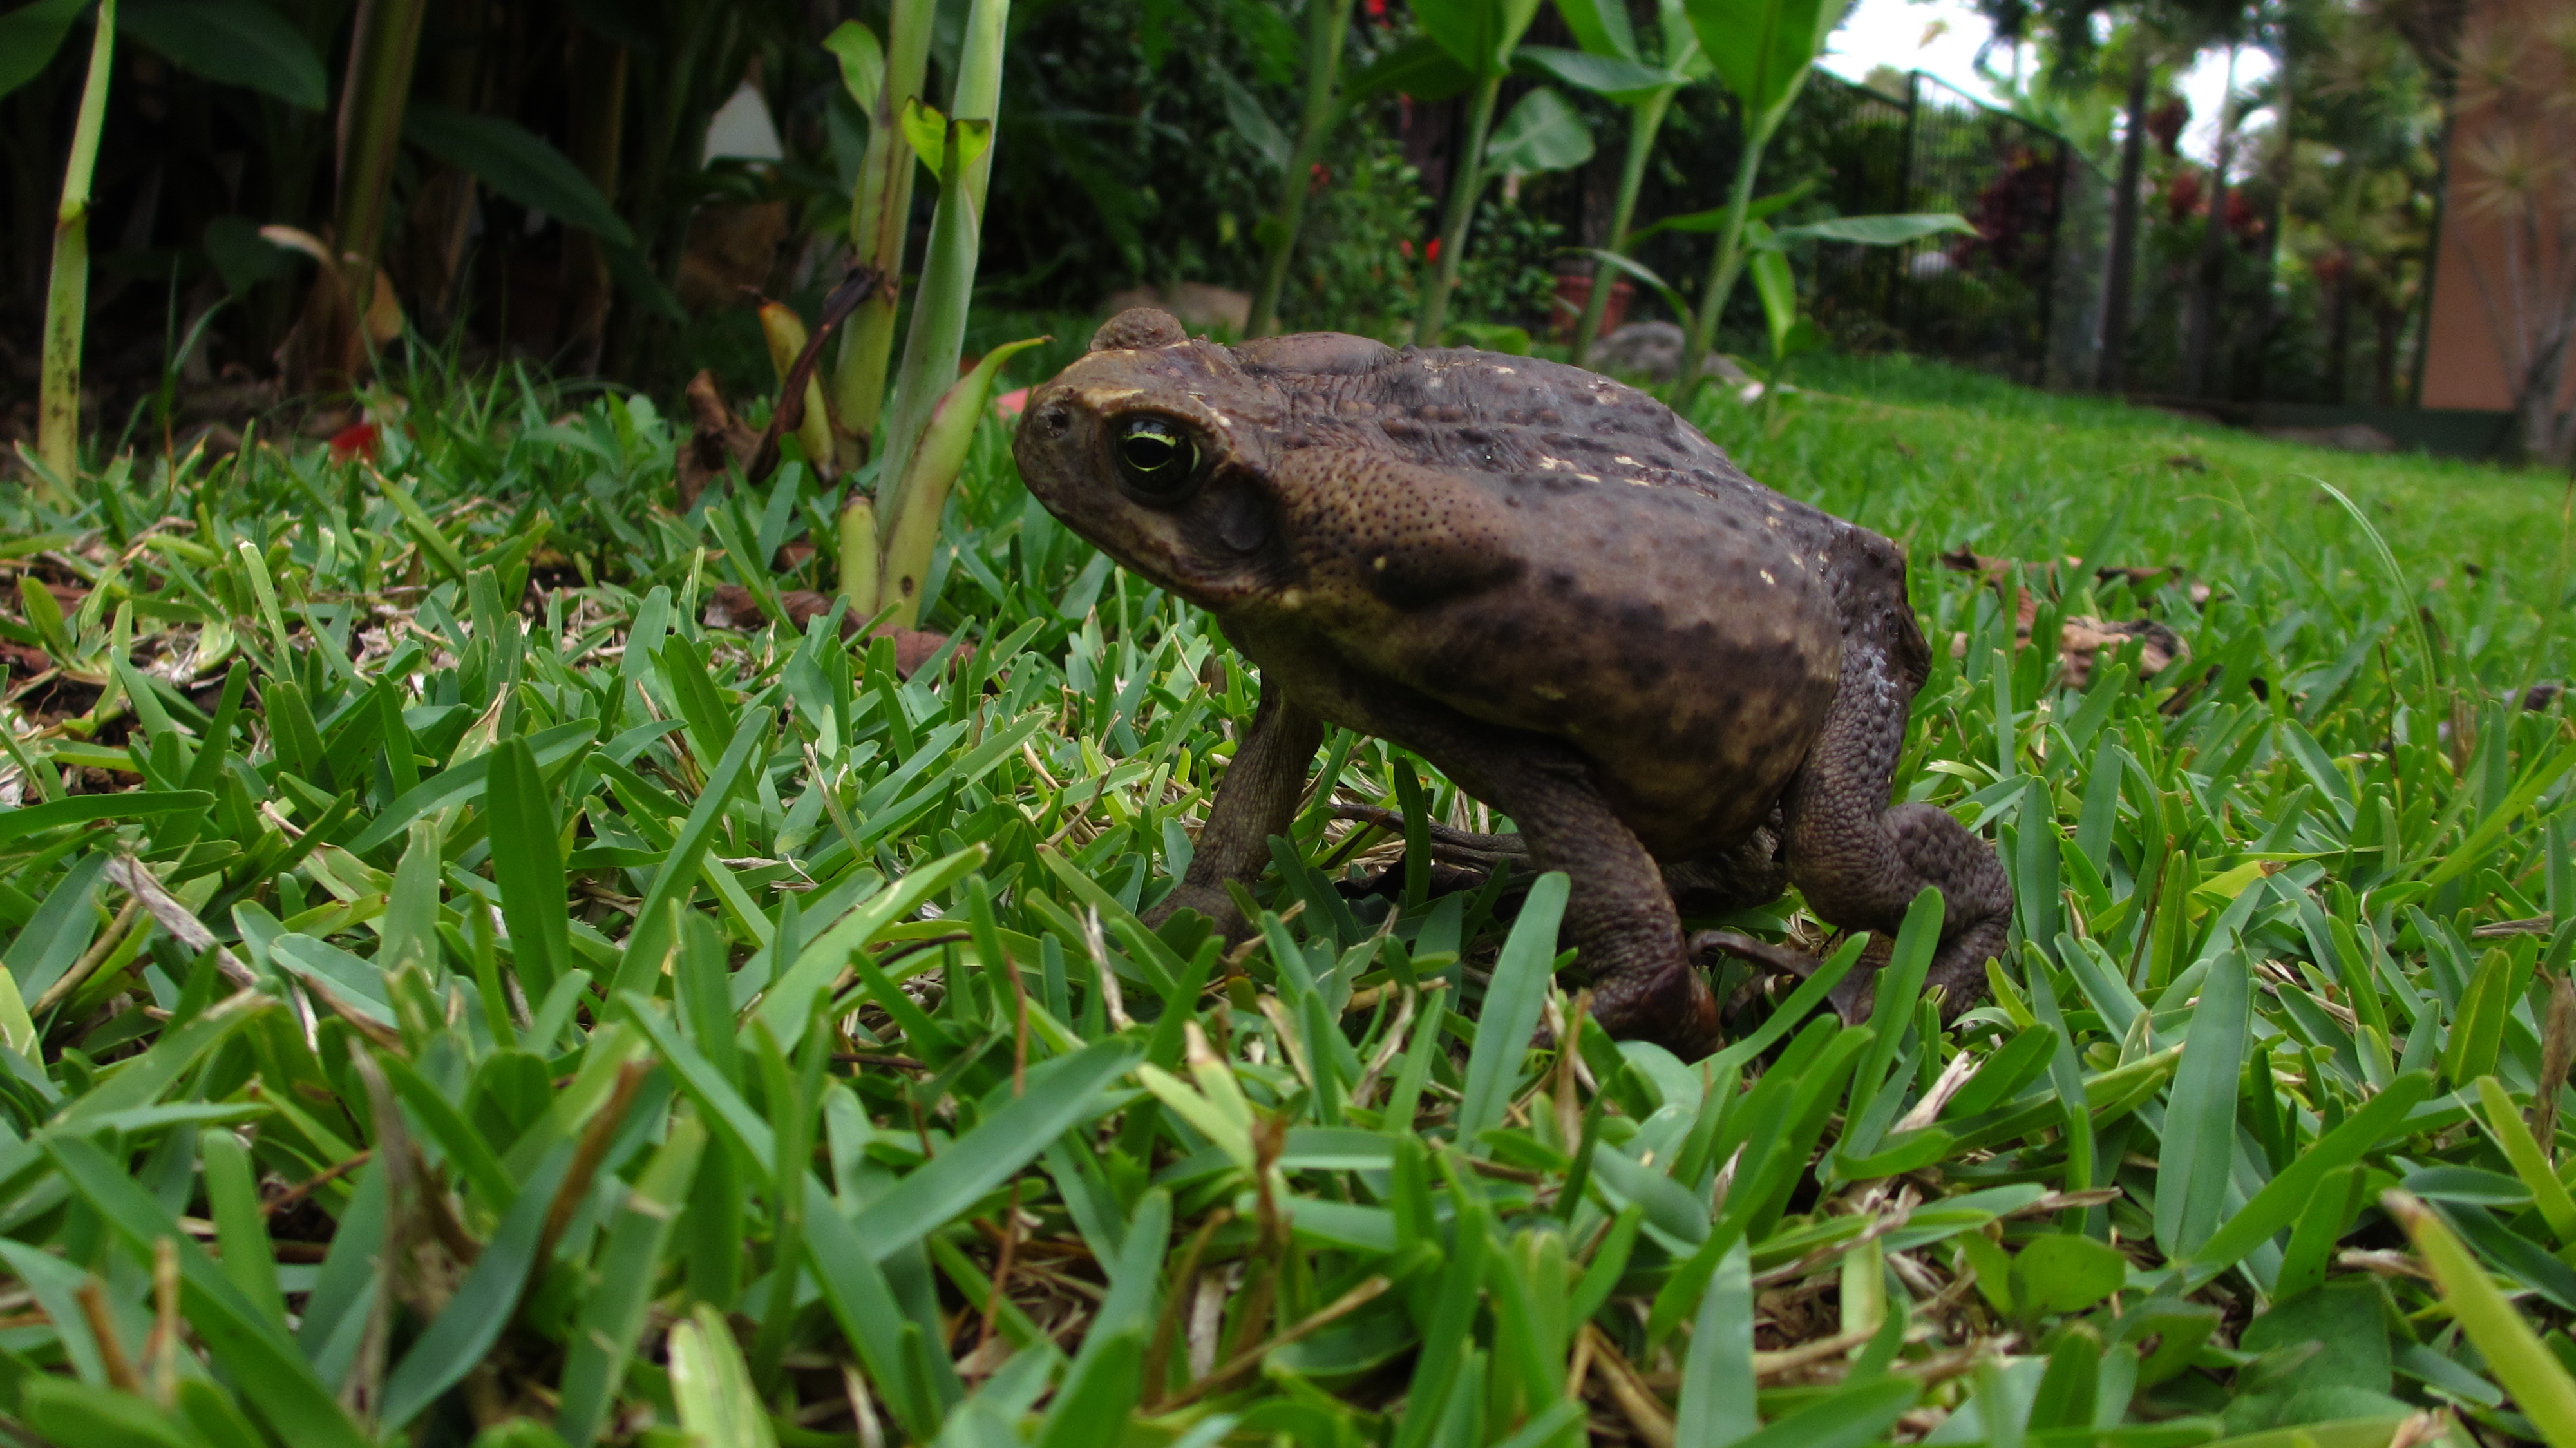 Yard toad